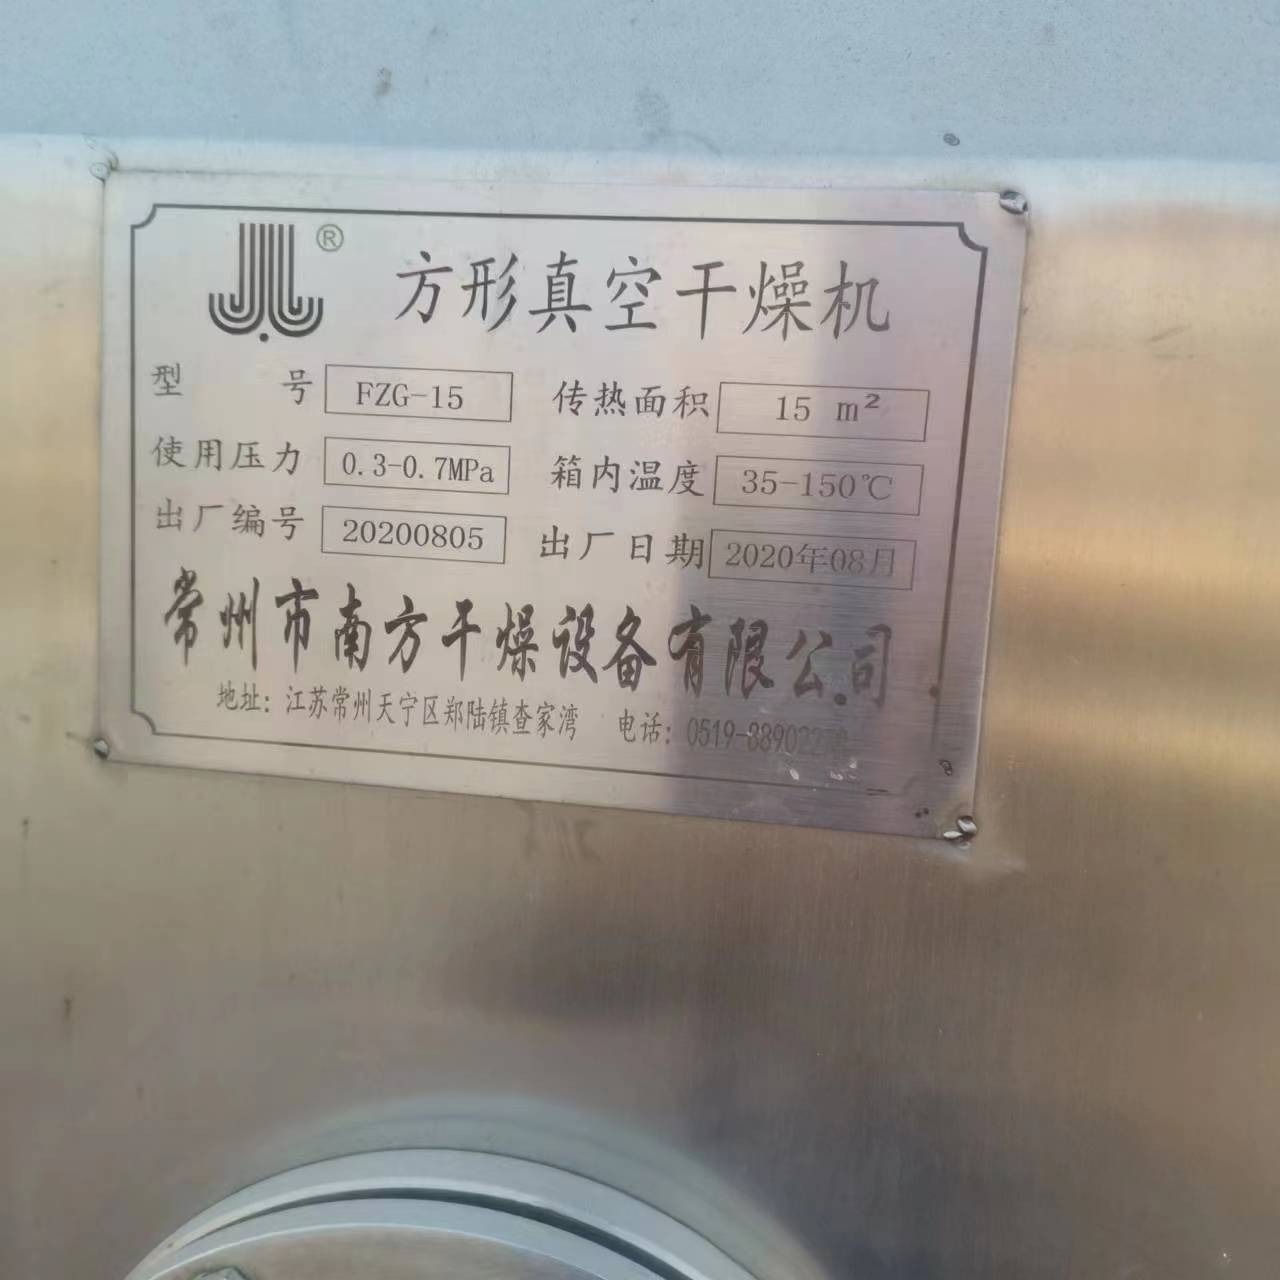 二手设备 江苏 常州南方设备     5吨 干燥设备方形真空干燥机 现货  价格美丽　 欢迎来电咨询图片